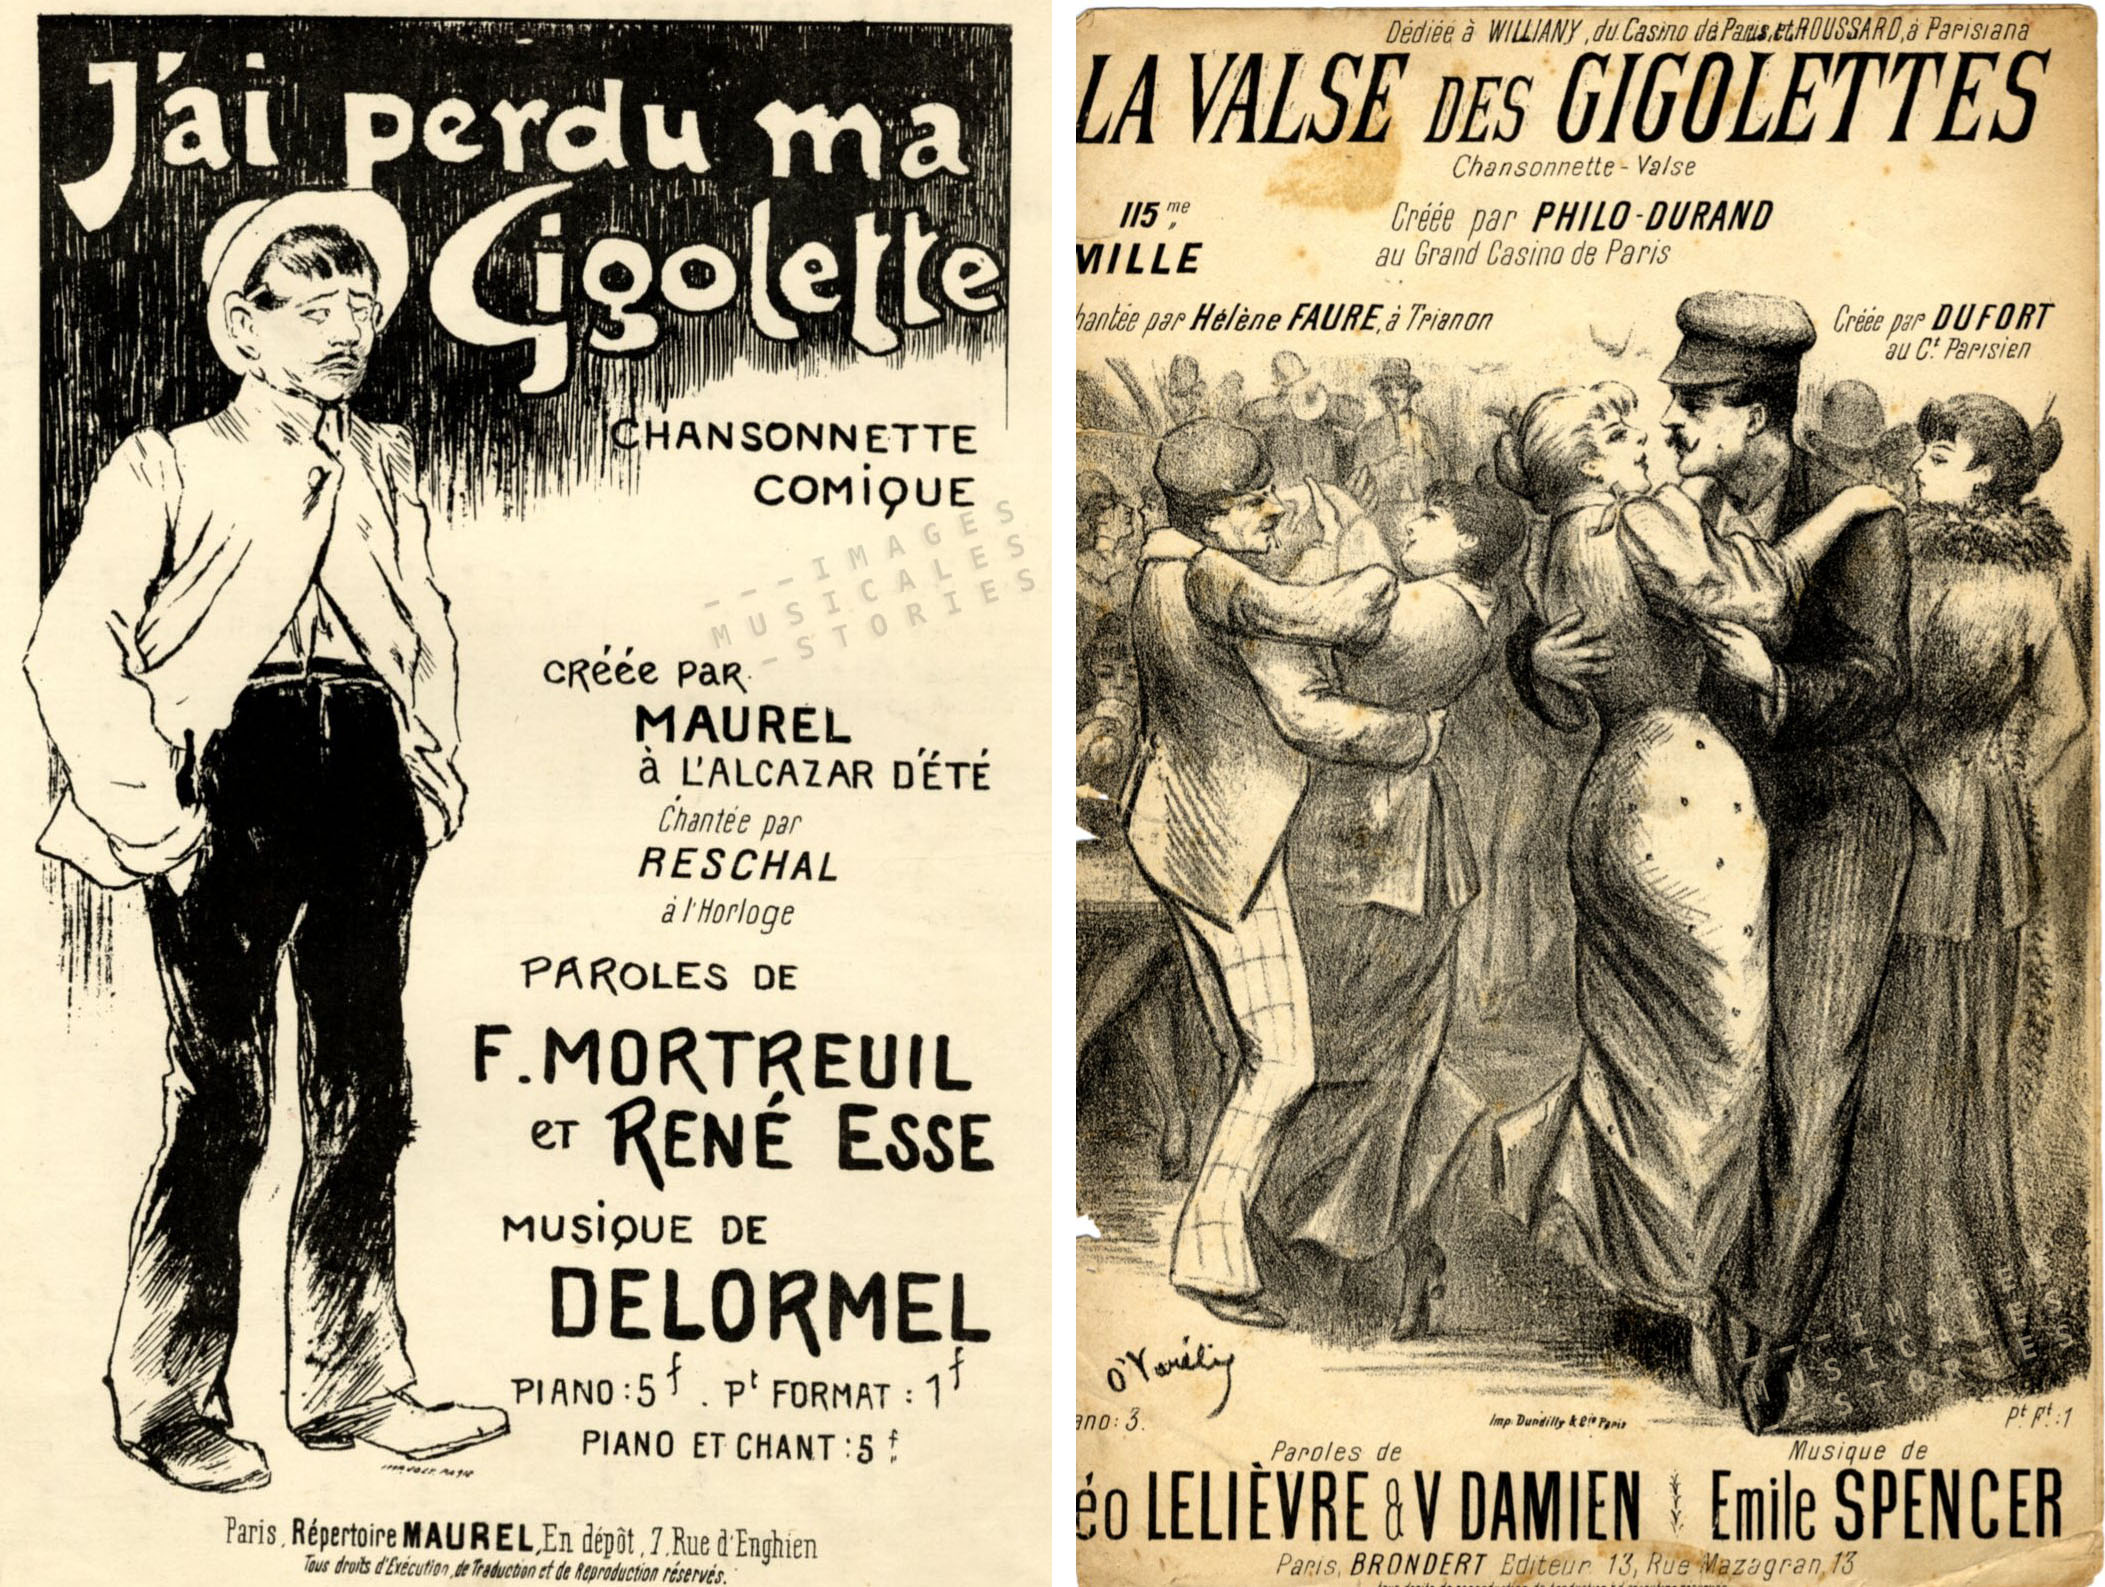 Left: illustration by Steinlen for 'J'ai perdu ma Gigolette'